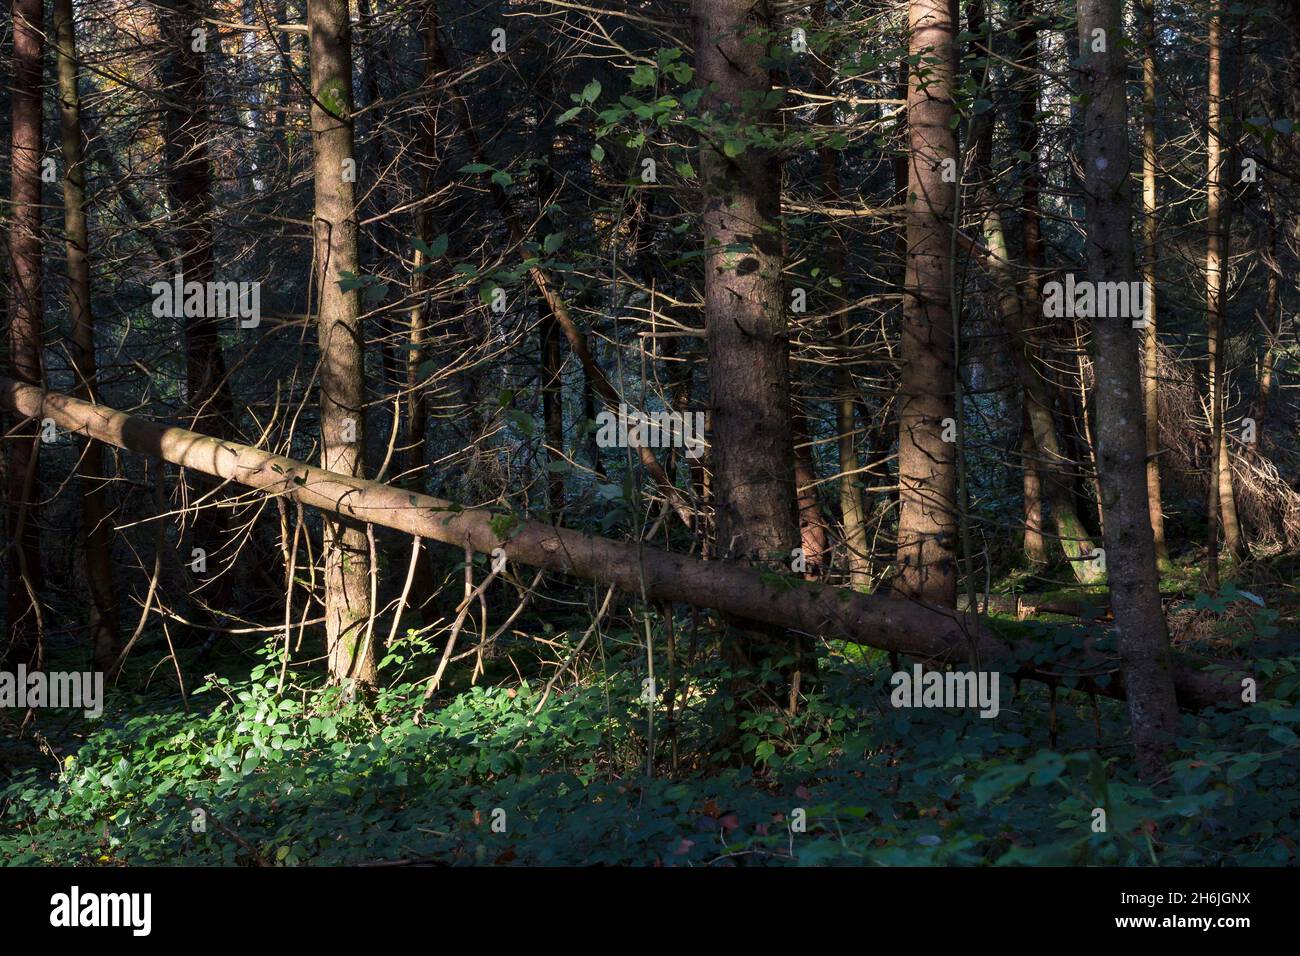 Gefallene Nadelbäume mit abgestorbenen Ästen in einem europäischen Wald im suny-Licht. Natürliches Bild als Symbol für den Waldbruch und den Klimawandel Stockfoto